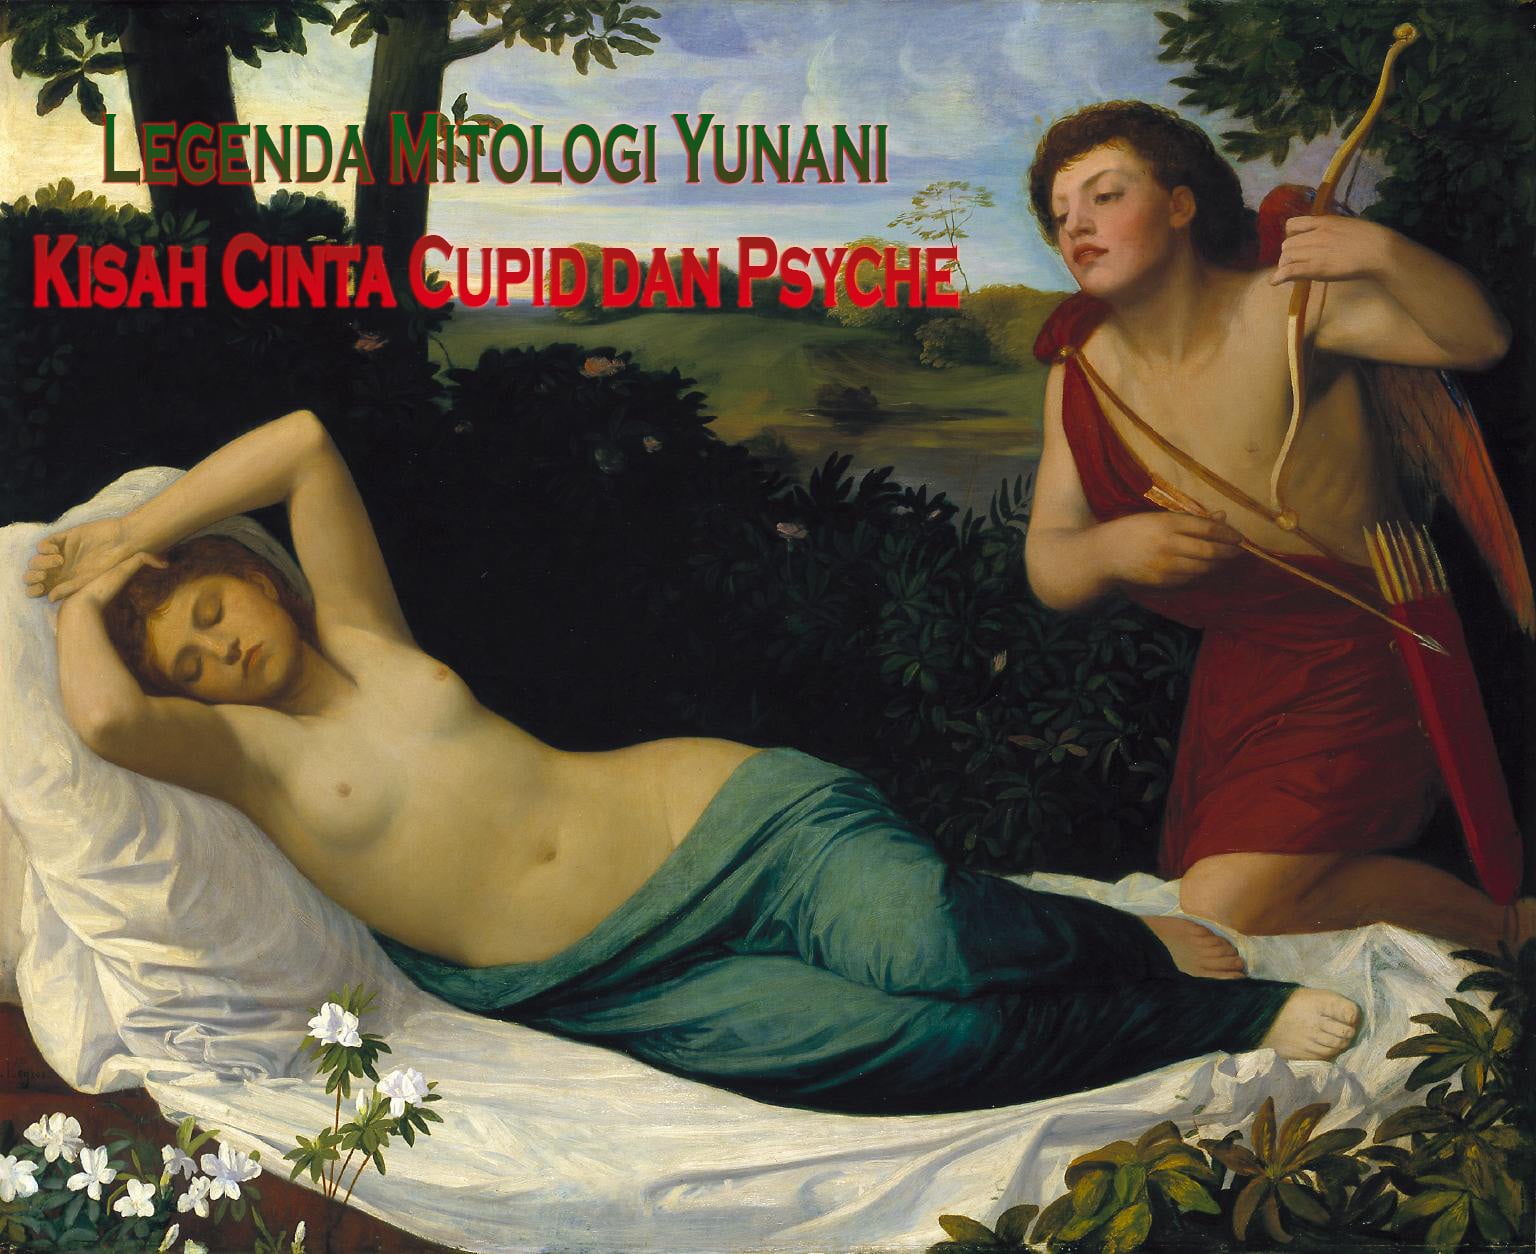 Legenda Mitologi Yunani Kisah Cinta Cupid dan Psyche